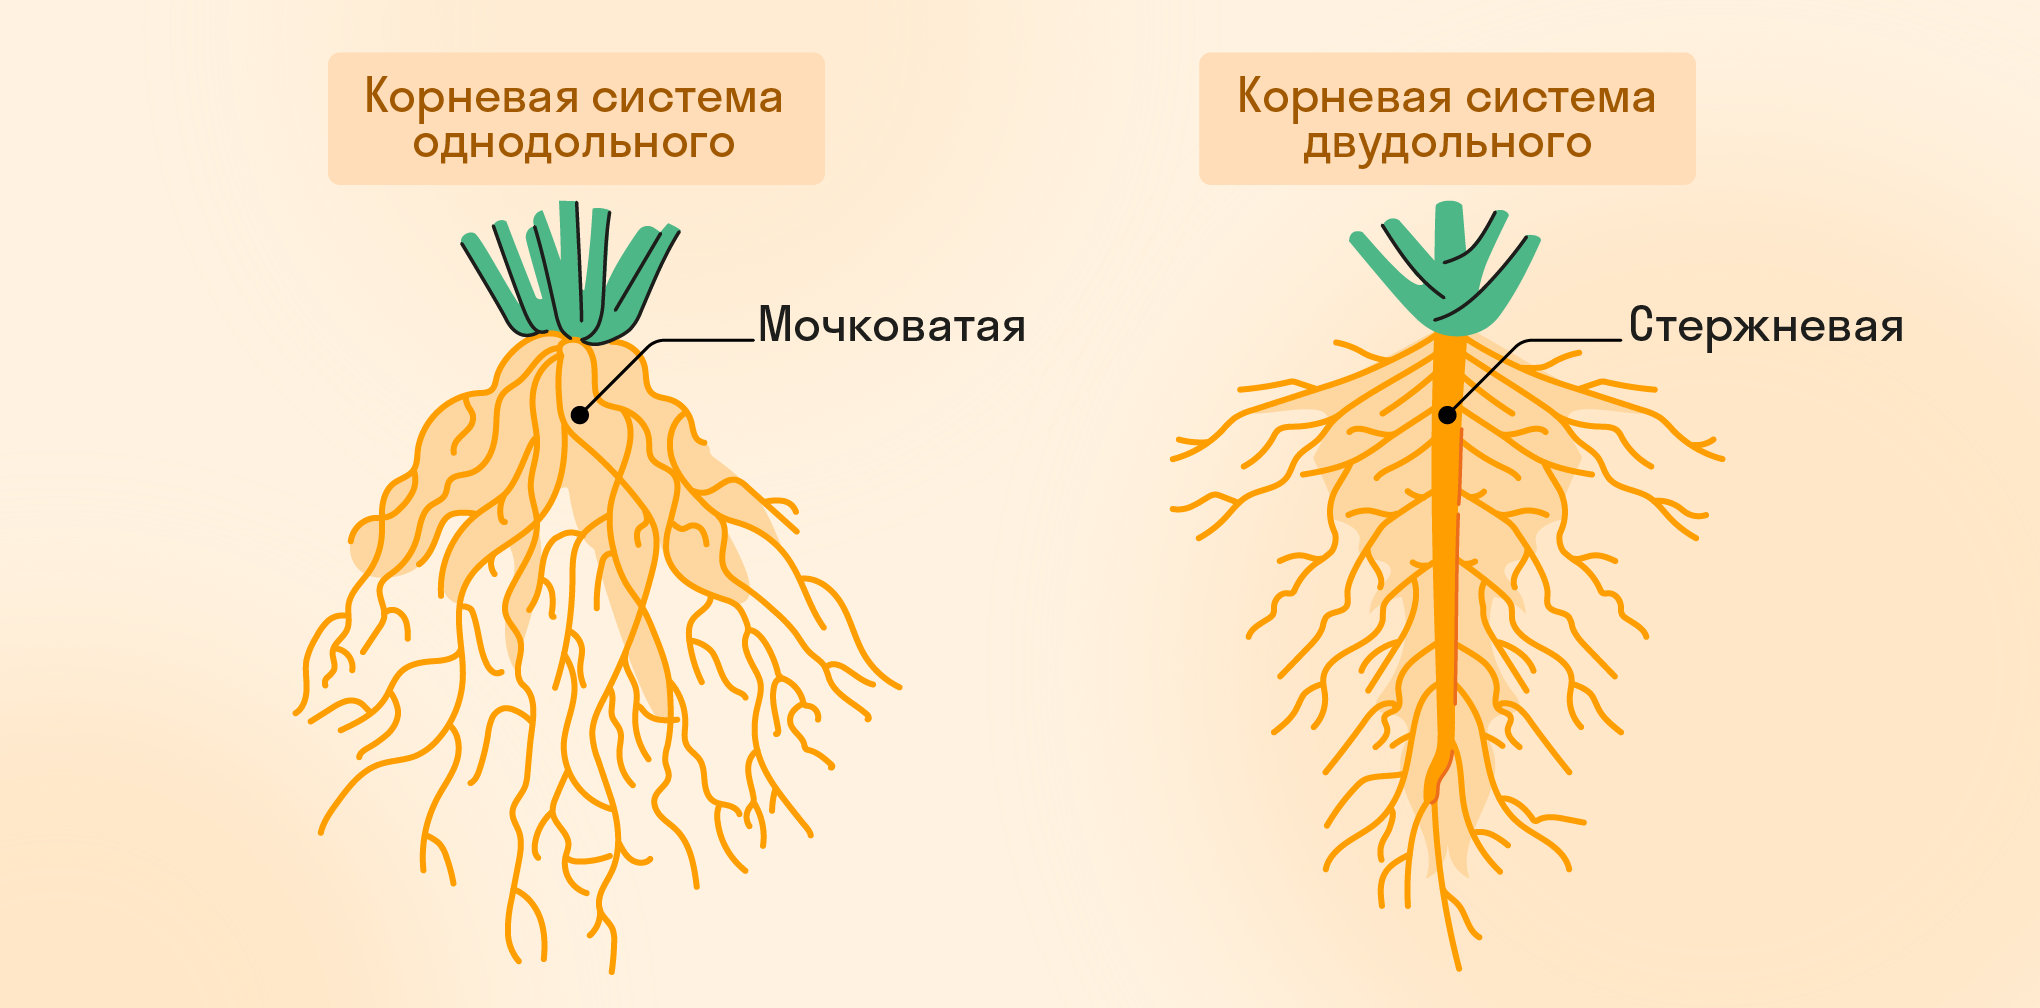 Корневая система однодольного и двудольного растений